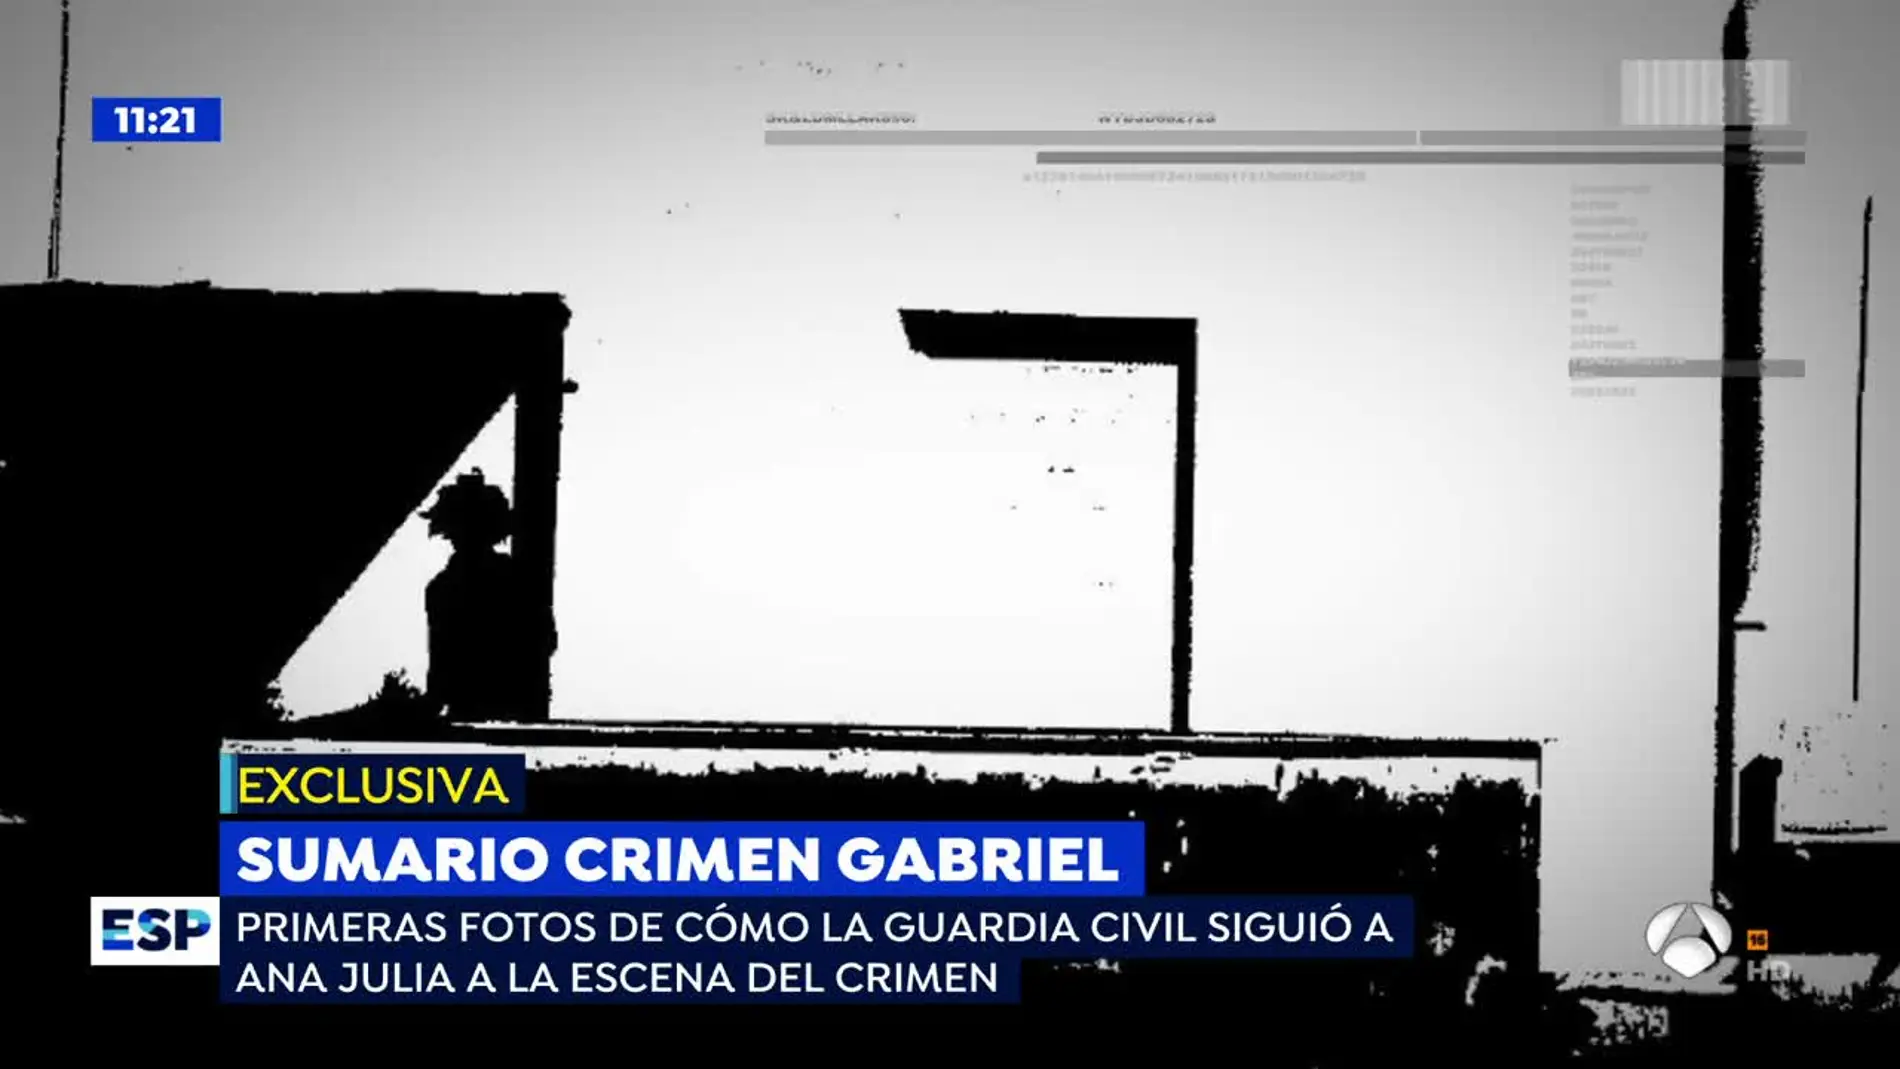  PRIMICIA: Las imágenes de Ana Julia Quezada trasladando el cuerpo de Gabriel que la conviertieron en culpable del crimen